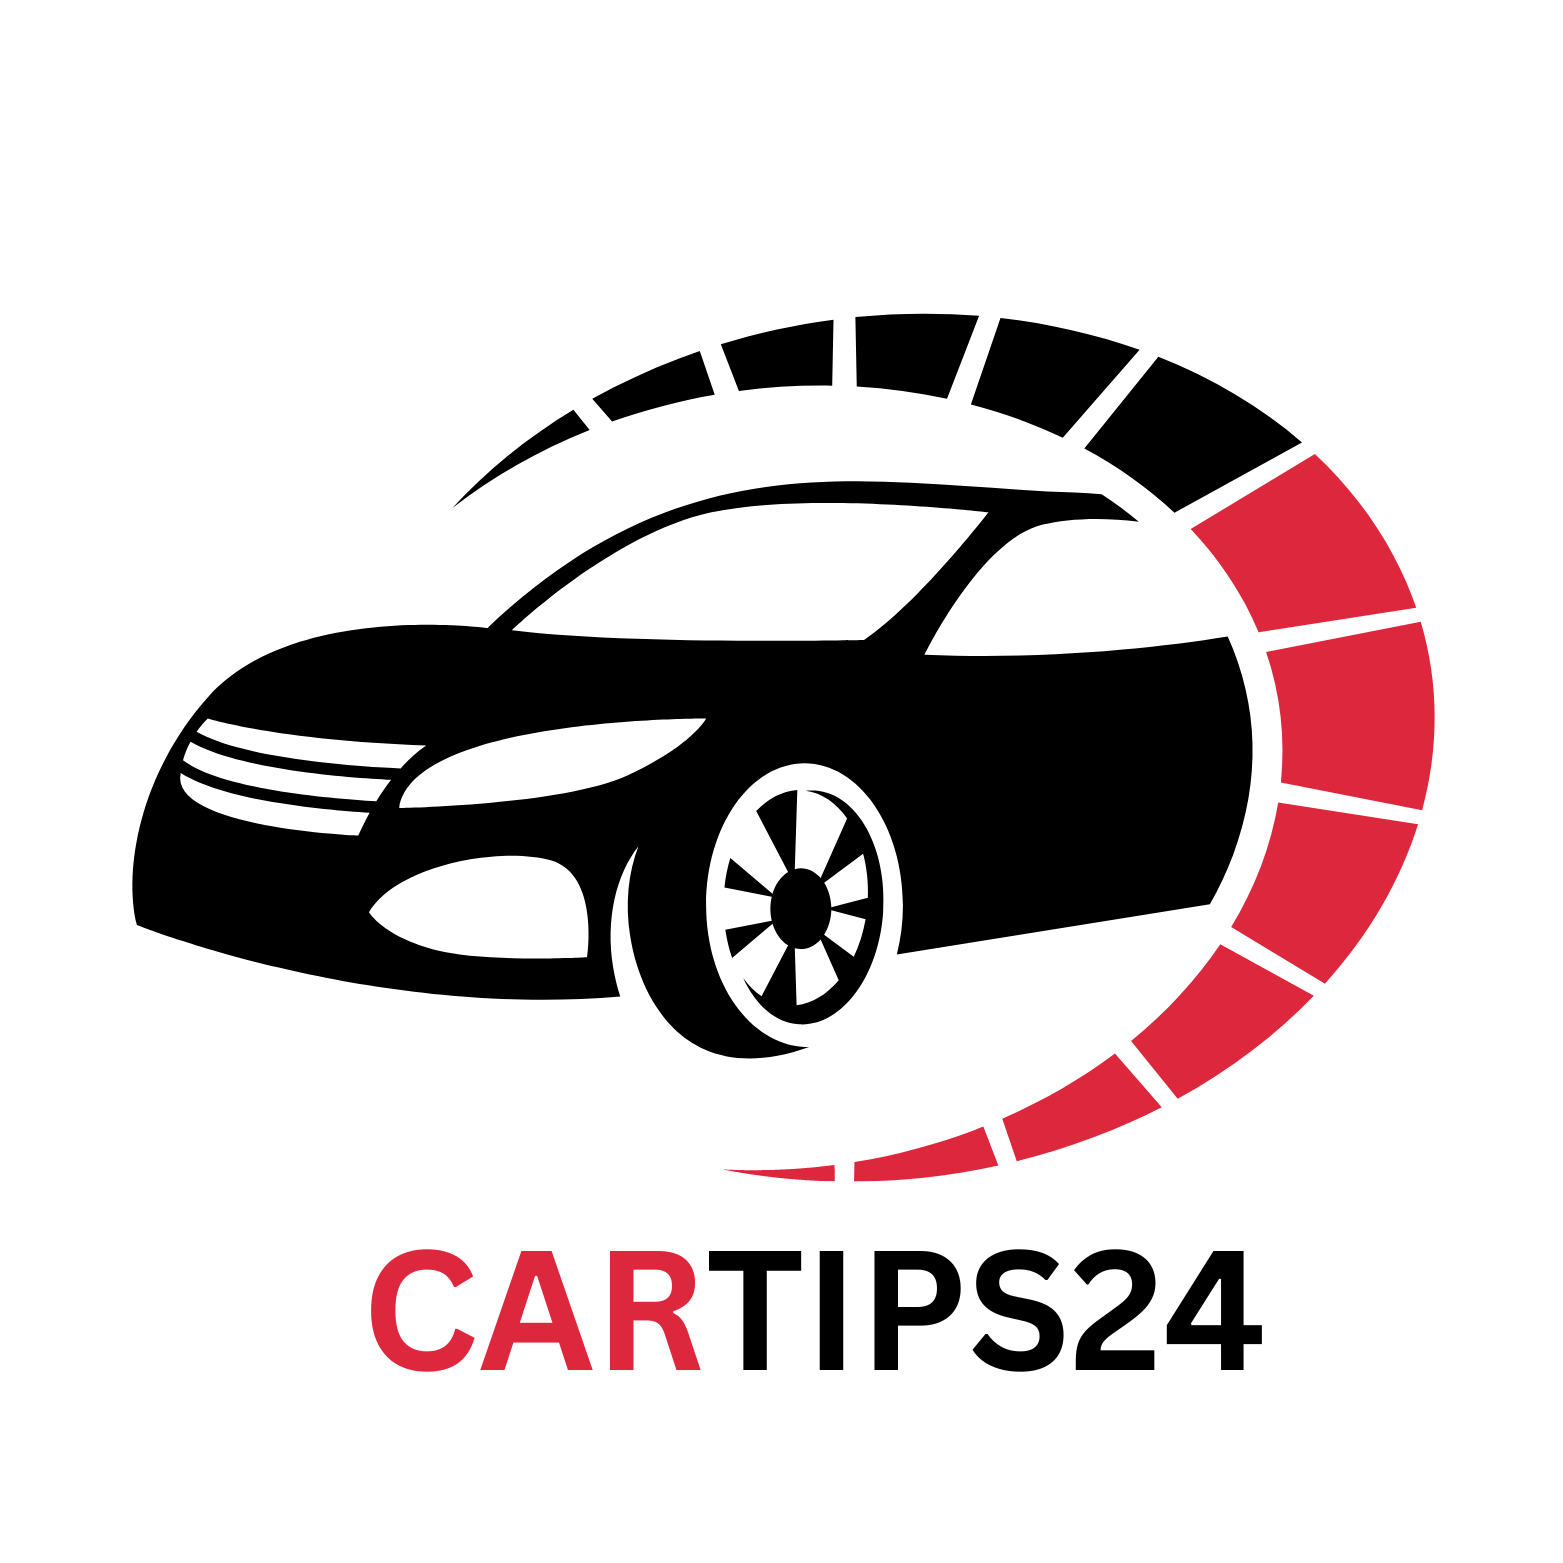 (c) Cartips24.com